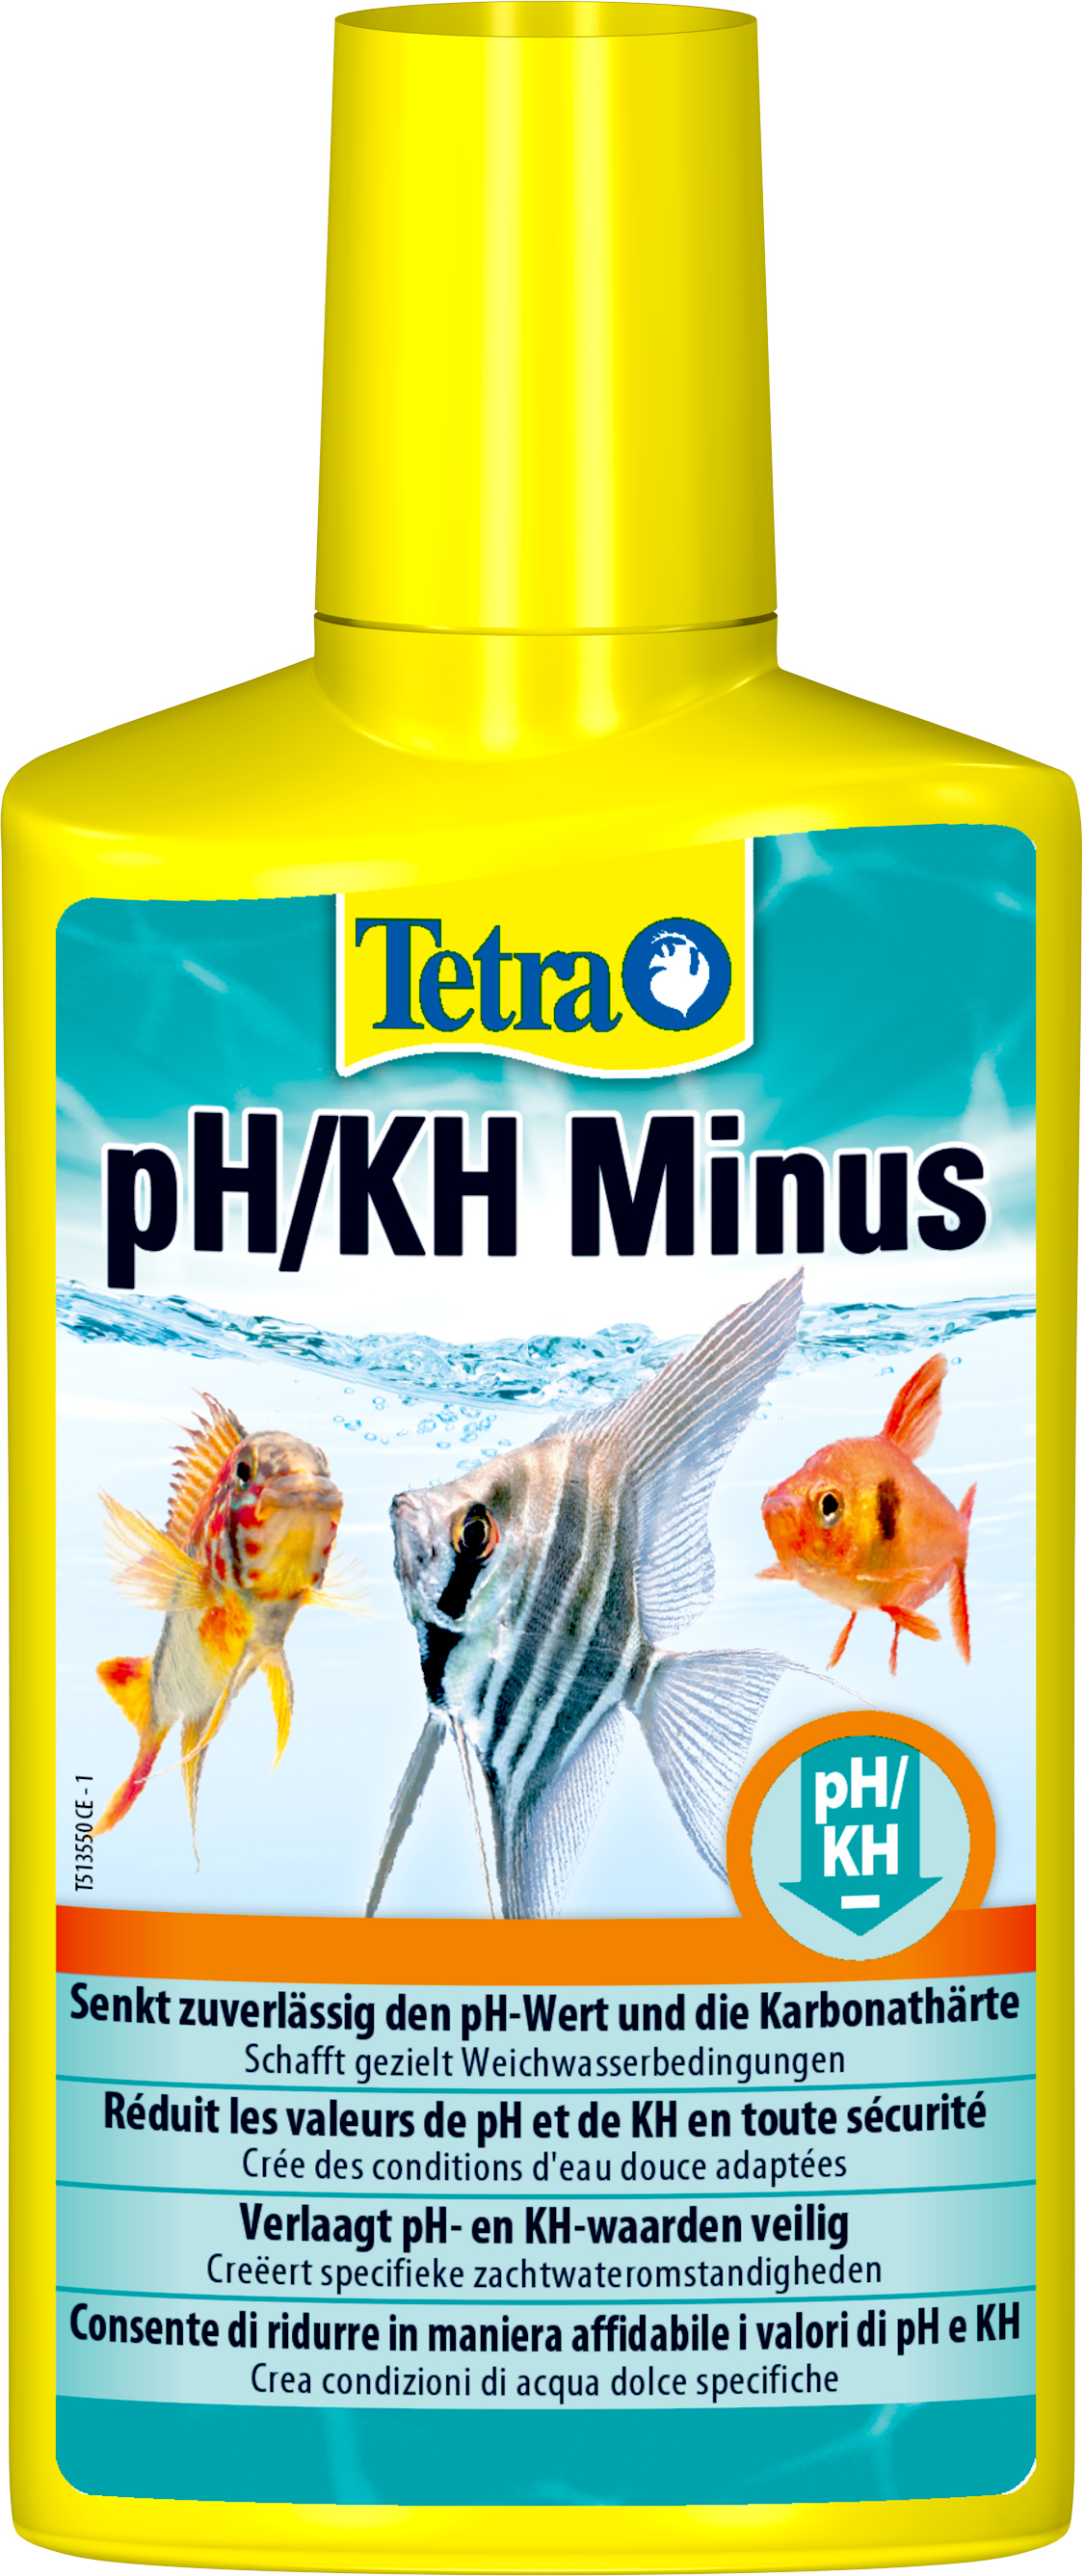 Verdikken Confronteren Veel gevaarlijke situaties Tetra pH/KH Minus: Tetra